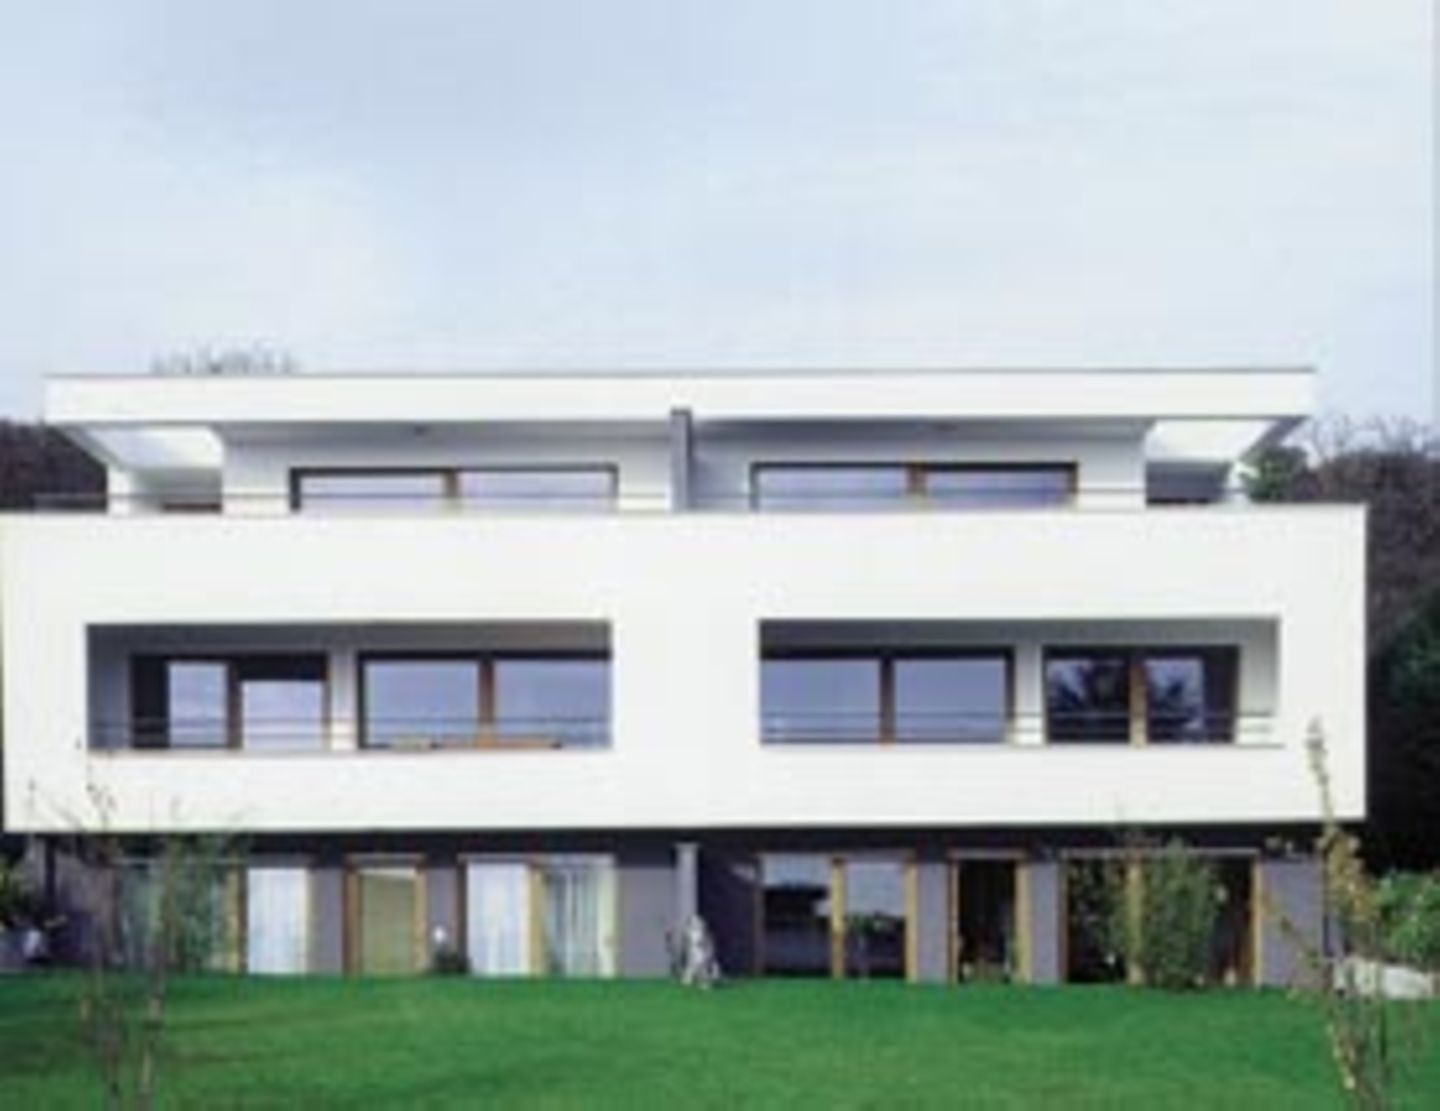 Die Ideale der klassischen Moderne prägen das Doppelwohnhaus in Rosbach. Große Fenster, Dachterrassen und Loggien öffnen sich zur Umgebung.